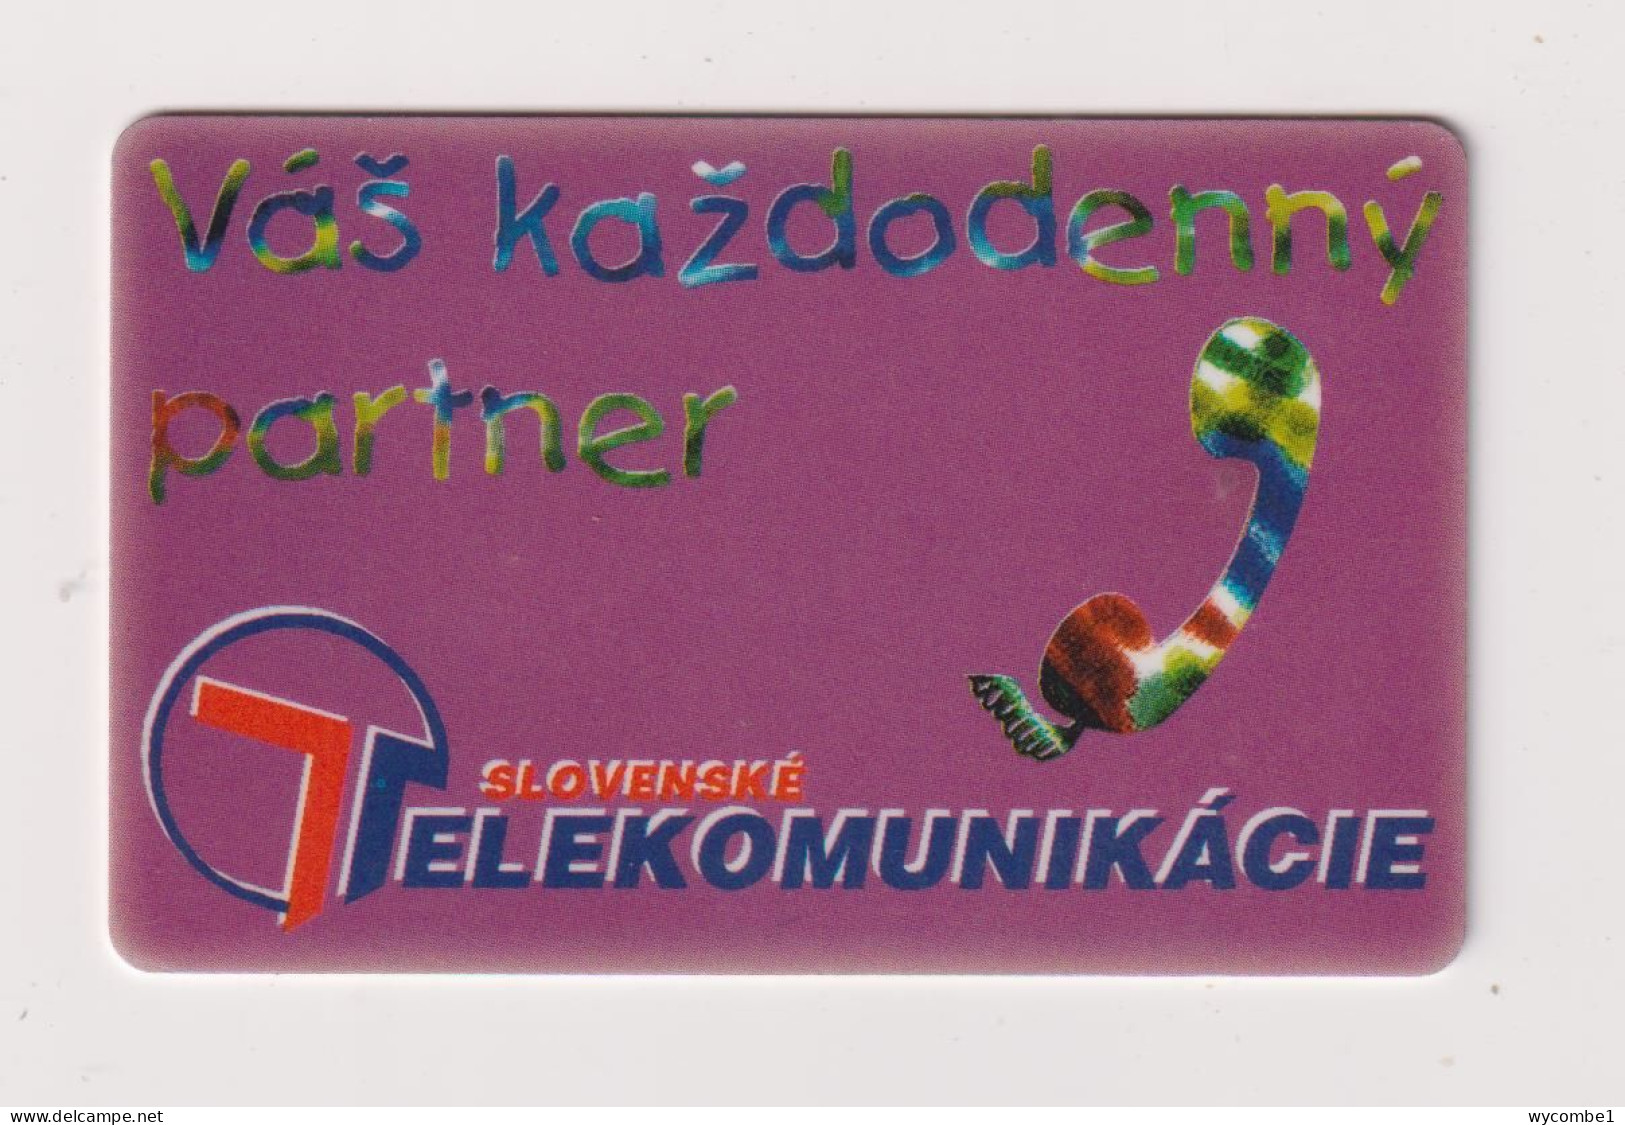 SLOVAKIA  - Vas Kazdadenny Chip Phonecard - Slovakia